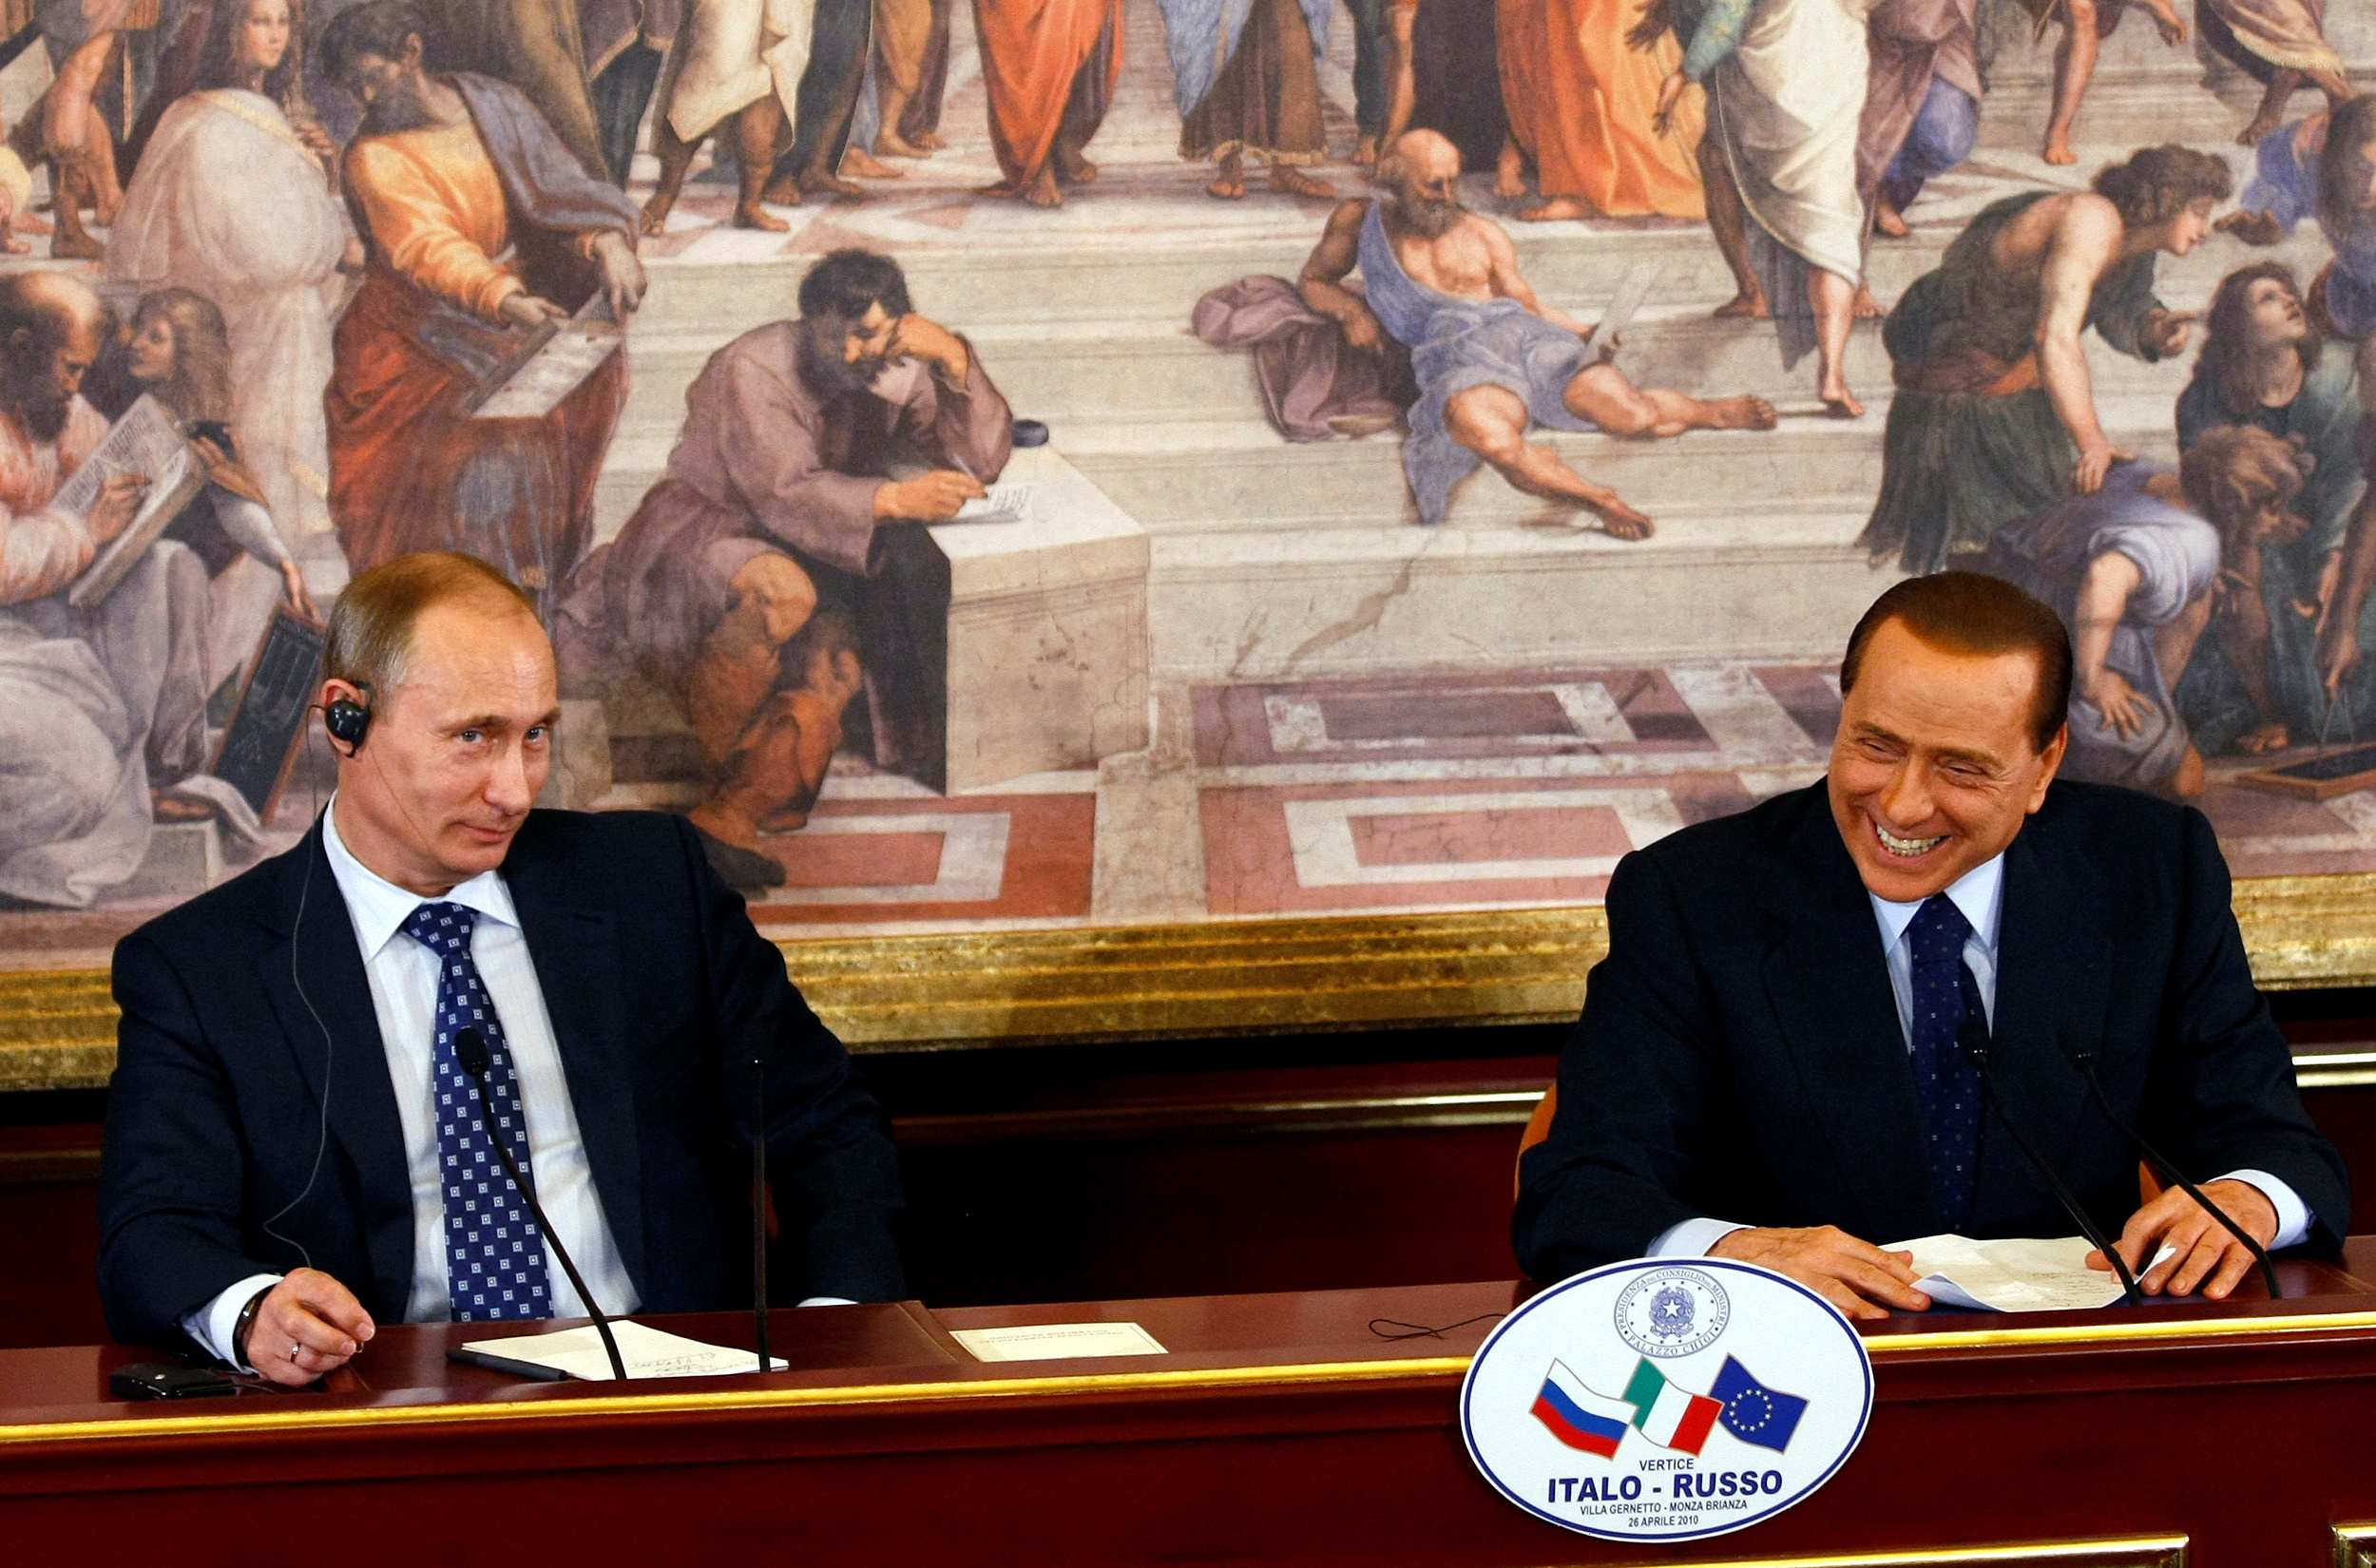 El ex primer ministro italiano Silvio Berlusconi sonríe mientras el presidente ruso Vladimir Putin mira durante una conferencia de prensa en una cumbre en Villa Gernetto en Gerno, cerca de Milán, el 26 de abril de 2010.  REUTERS/Alessandro Garofalo